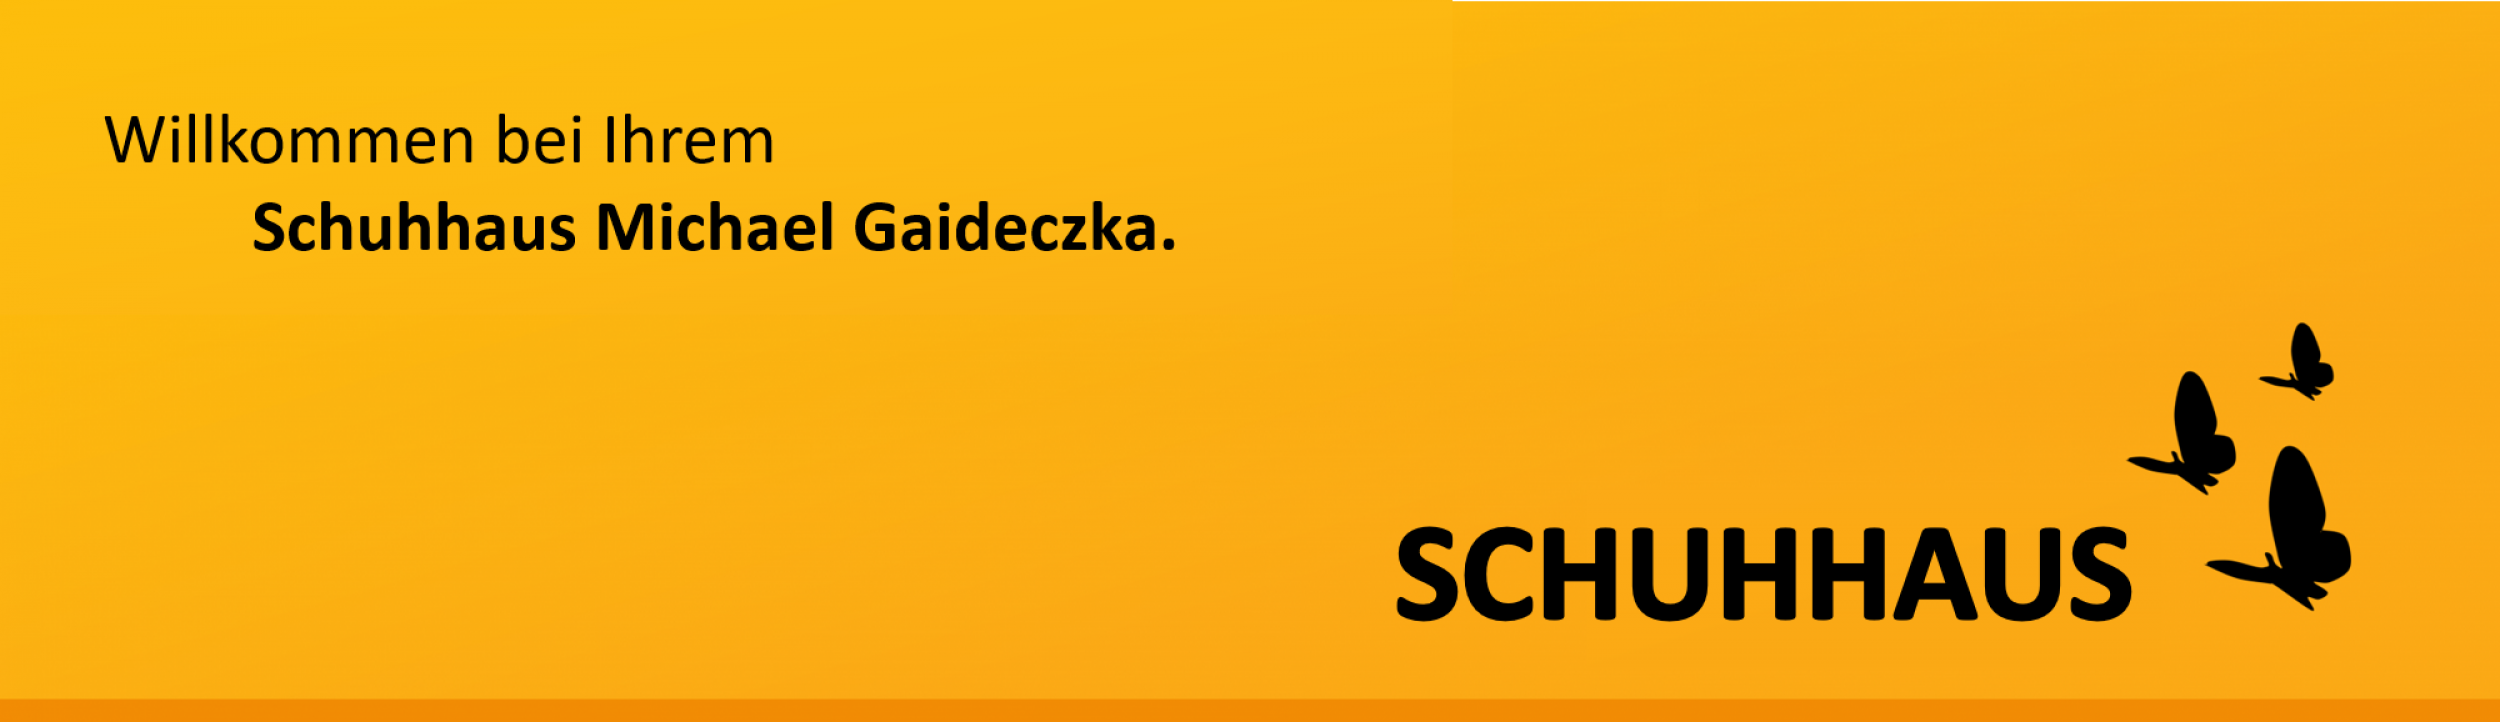 schuhhaus24.net – Schuhhaus Michael Gaideczka – Annaberg-Buchholz, Ehrenfriedersdorf, Gelenau, Thalheim, Radeberg